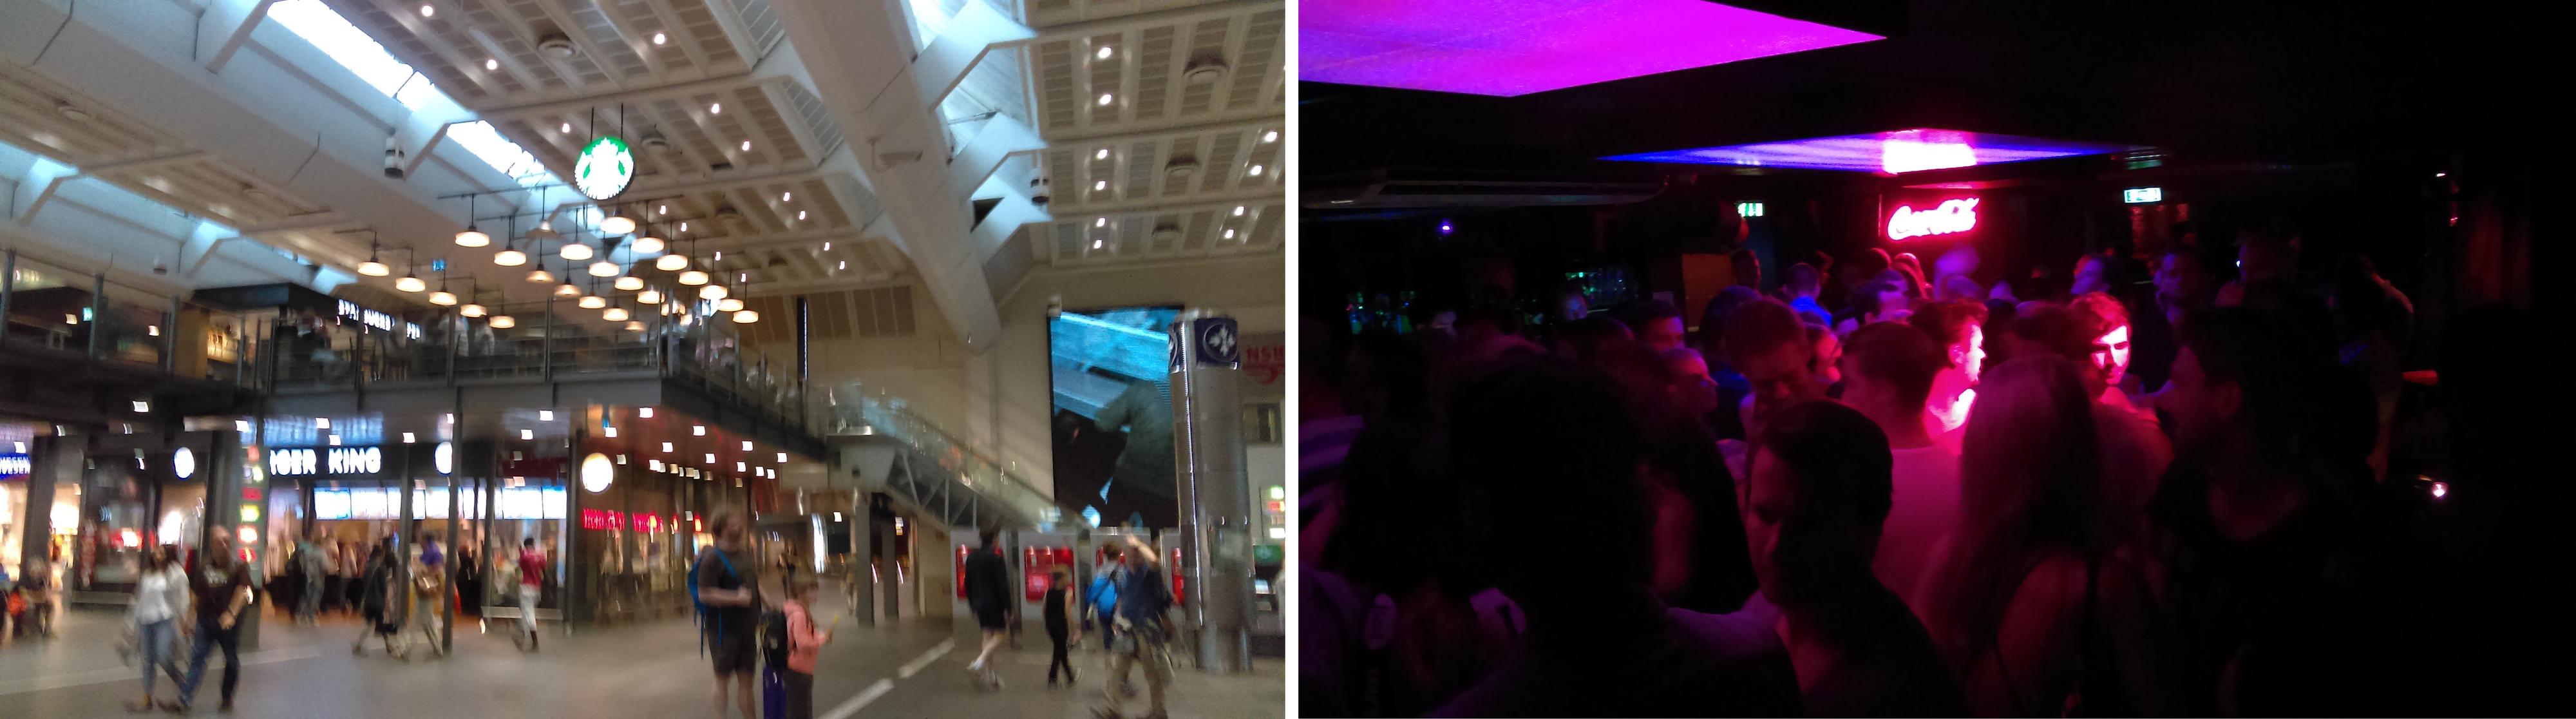 Å ta bilder i dunklere lysforhold er ingen god idé – hverken på Oslo S (venstre) eller nattklubber som Horgans (høyre).